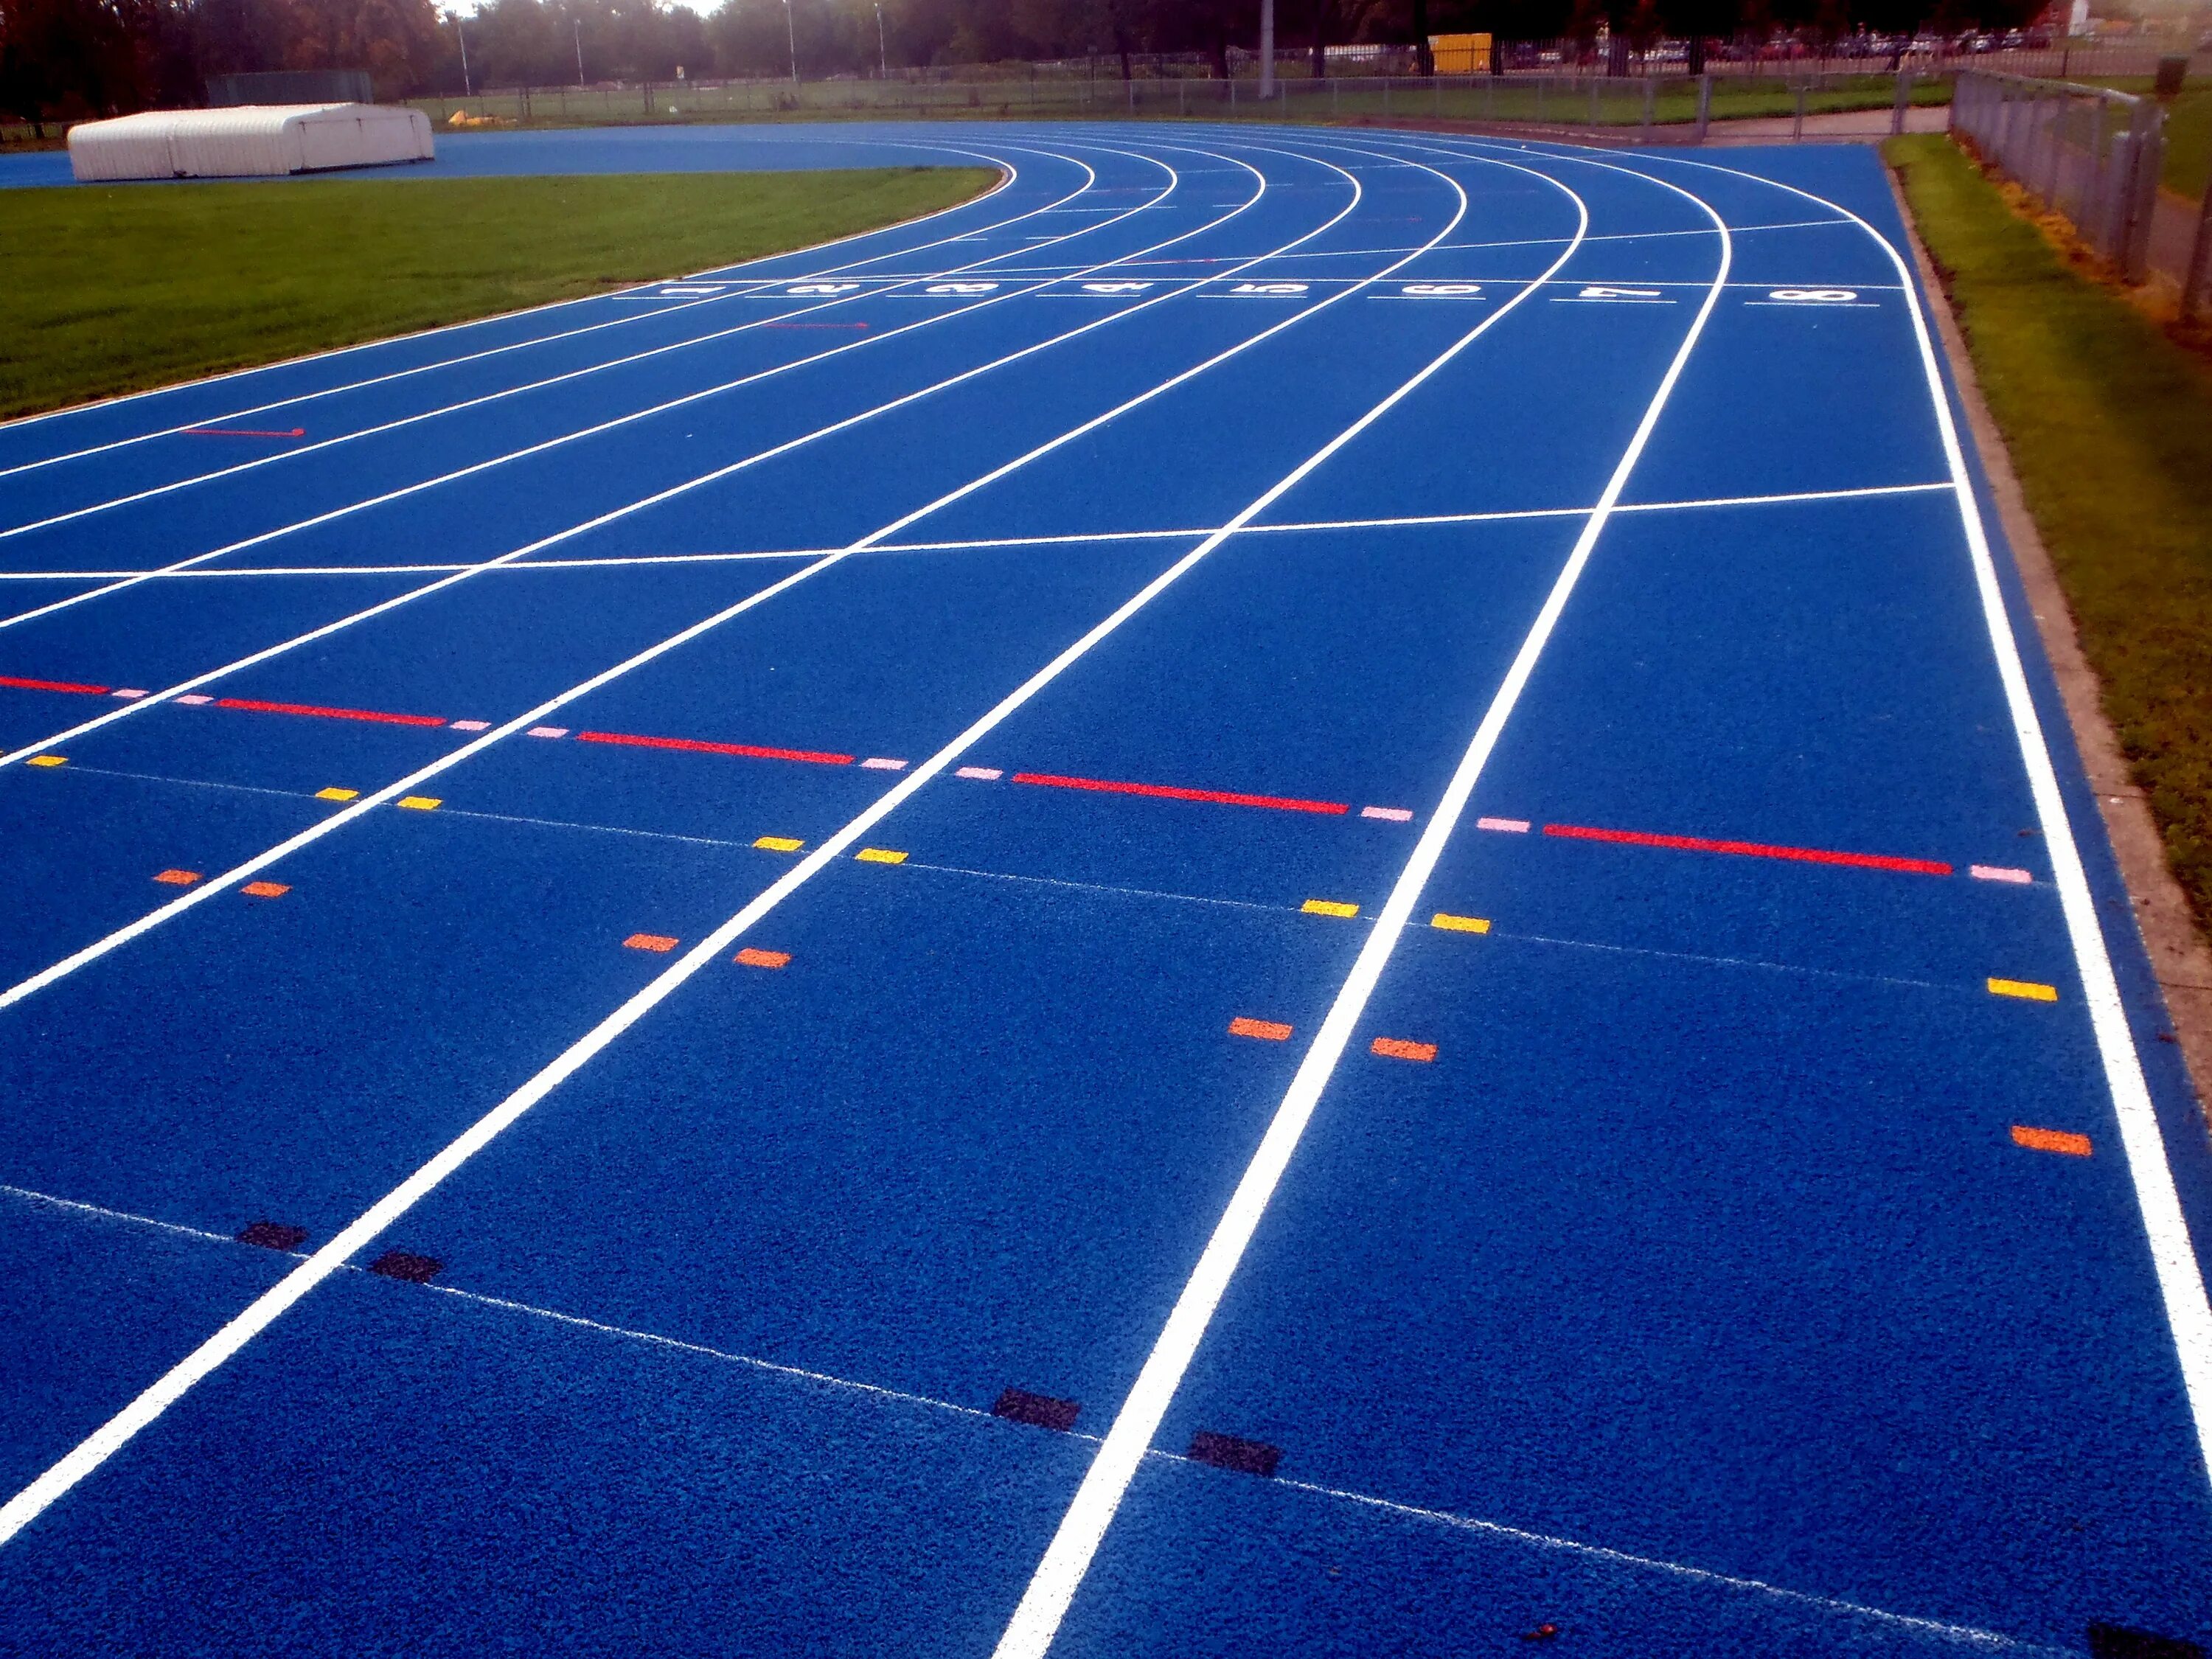 Беговая дорожка (лёгкая атлетика). Стадион с беговой дорожкой 400 м. Дорожка для бега. Спортивное покрытие.